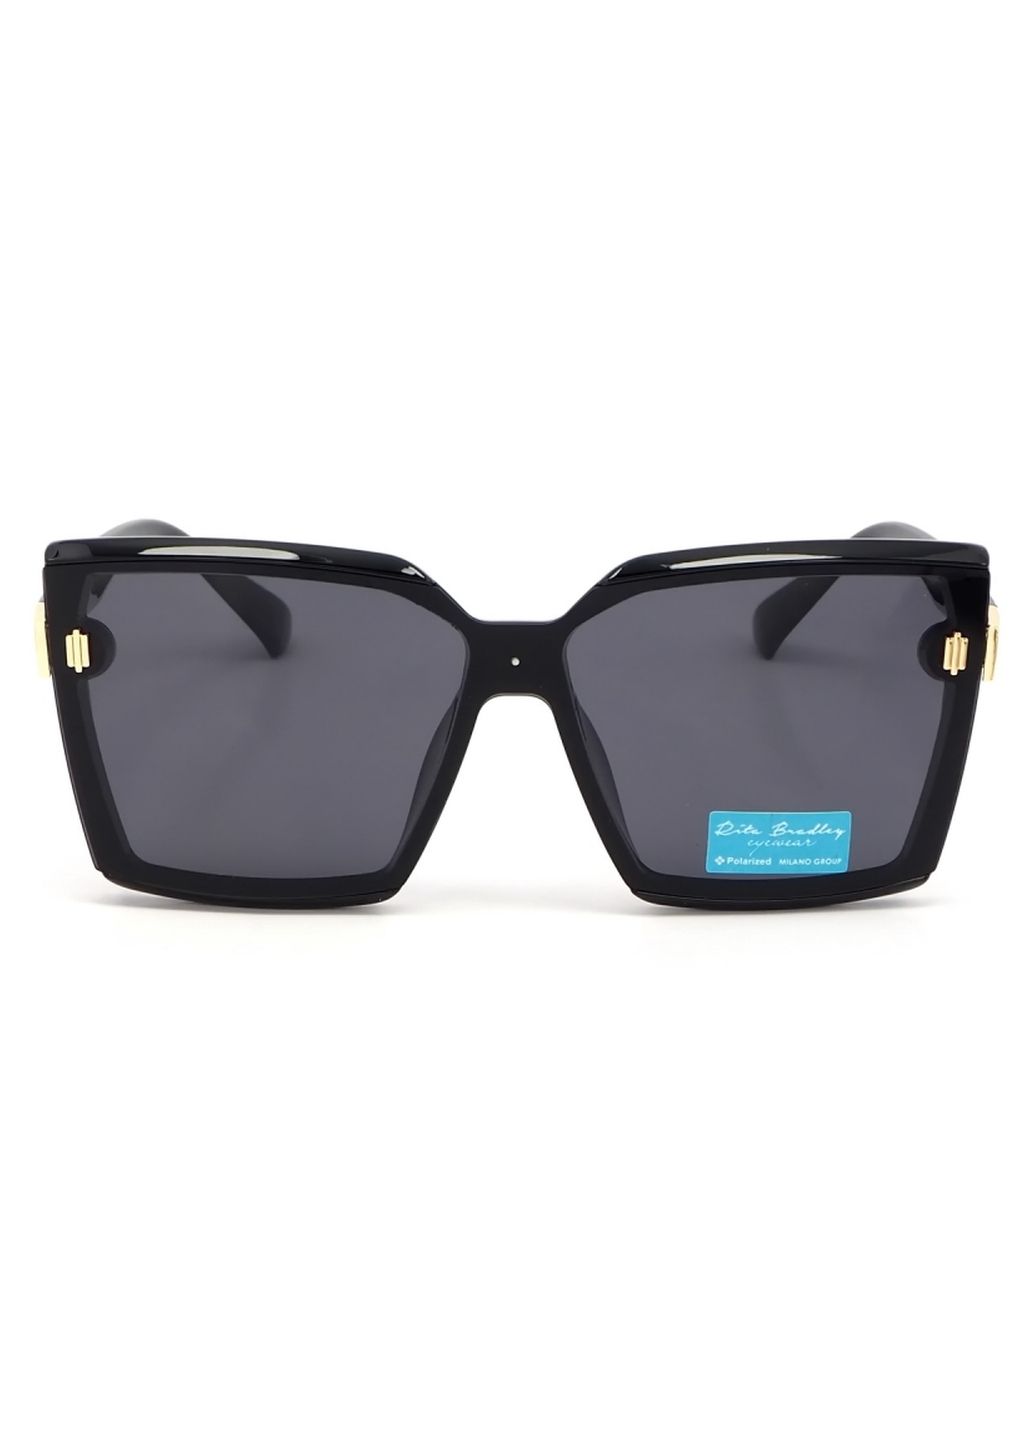 Купить Женские солнцезащитные очки Rita Bradley с поляризацией RB723 112037 в интернет-магазине